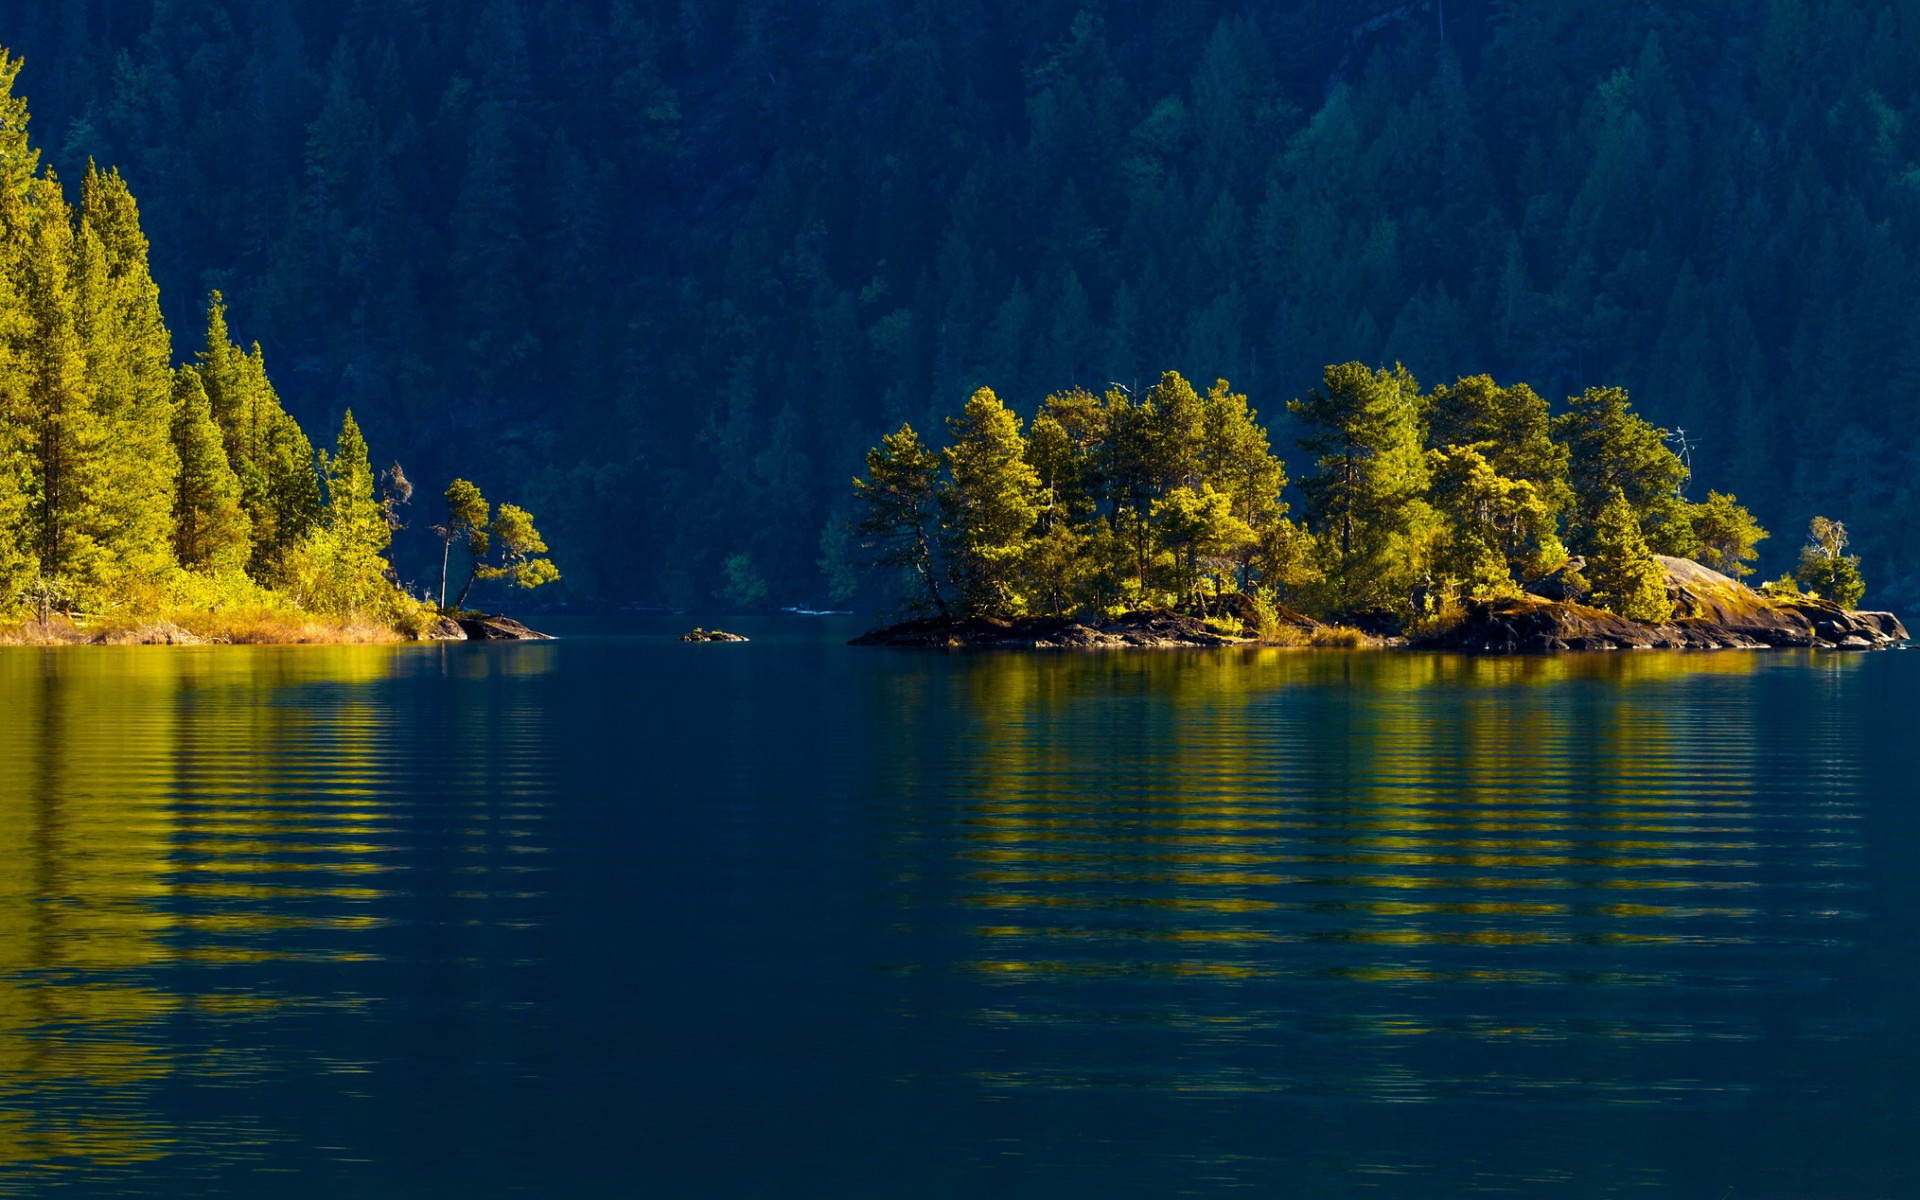 Lake, HD wallpaper, Background image, 1920x1200 HD Desktop